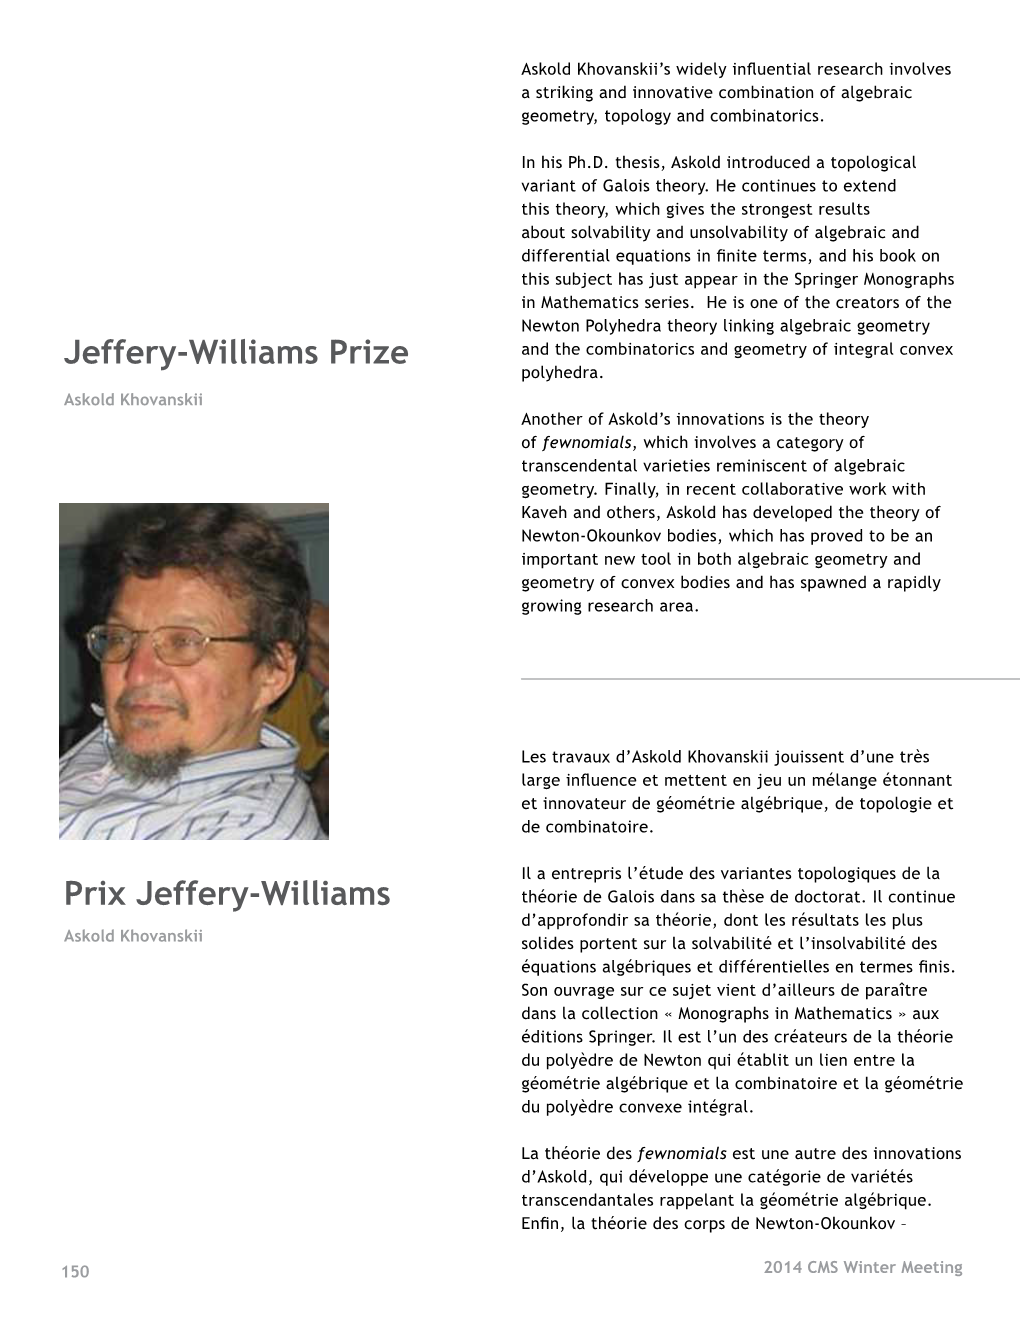 Jeffery-Williams Prize Prix Jeffery-Williams